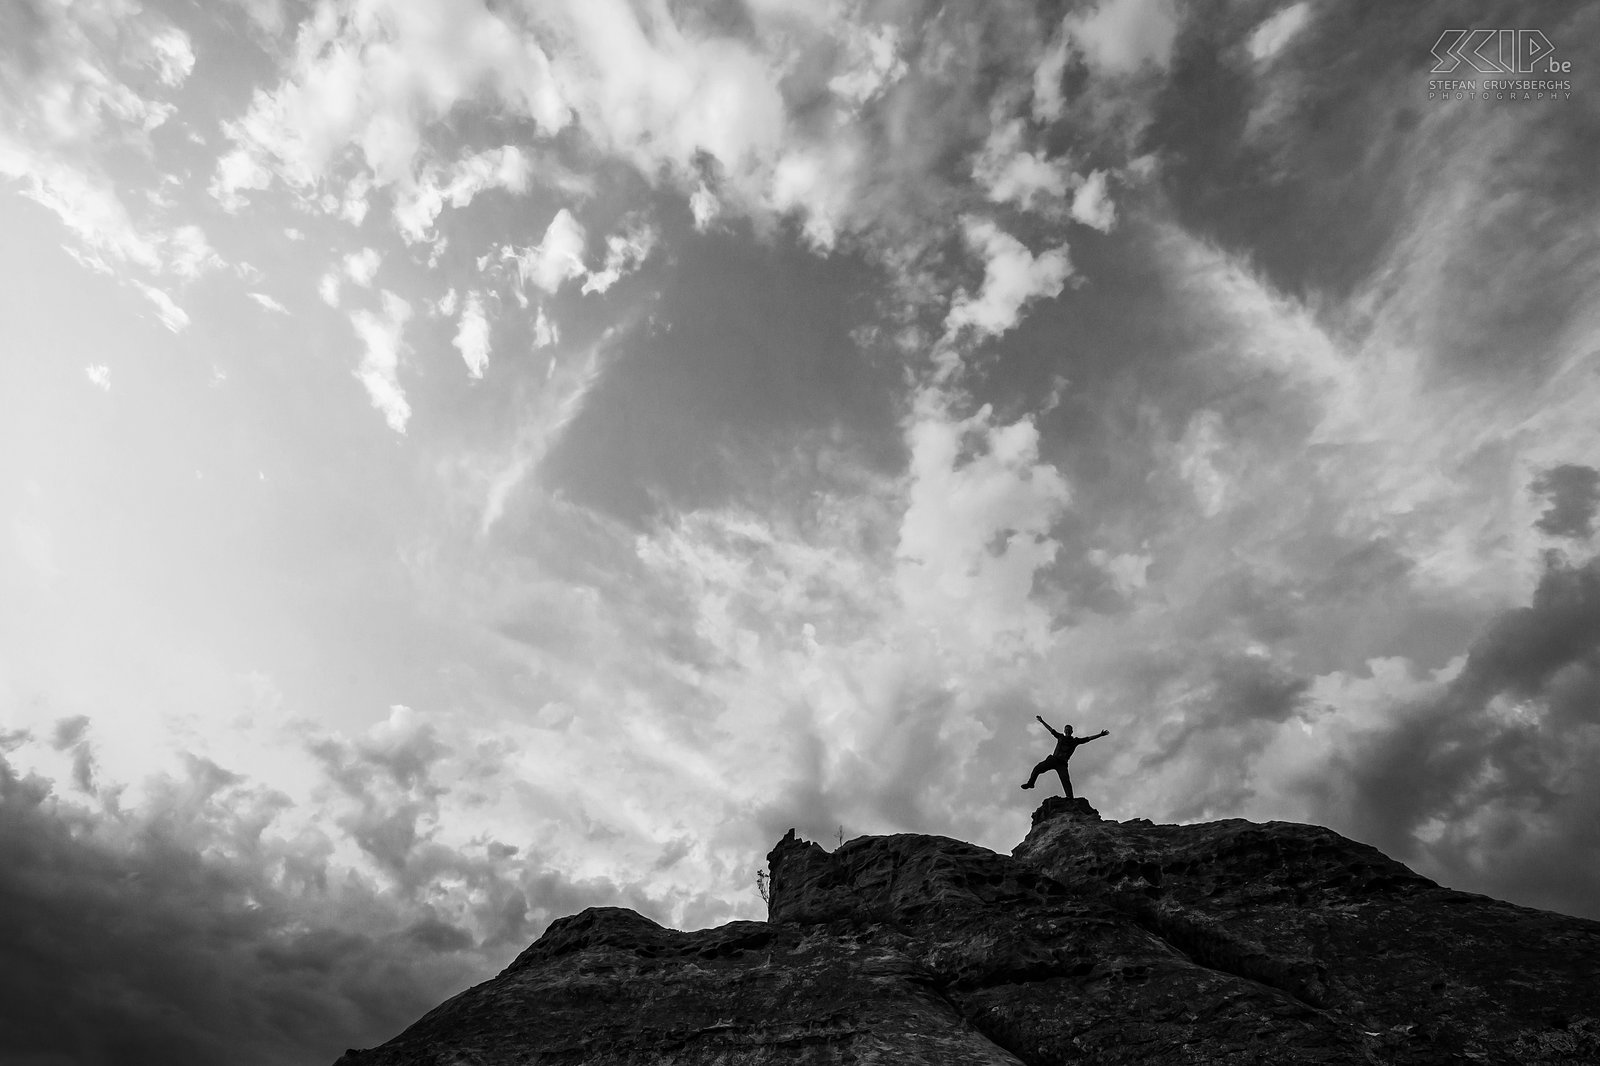 Isalo - Op de top van een rots Isalo is heel bekend om zijn prachtige zandstenen rotsformaties en diepe canyons. Stefan Cruysberghs